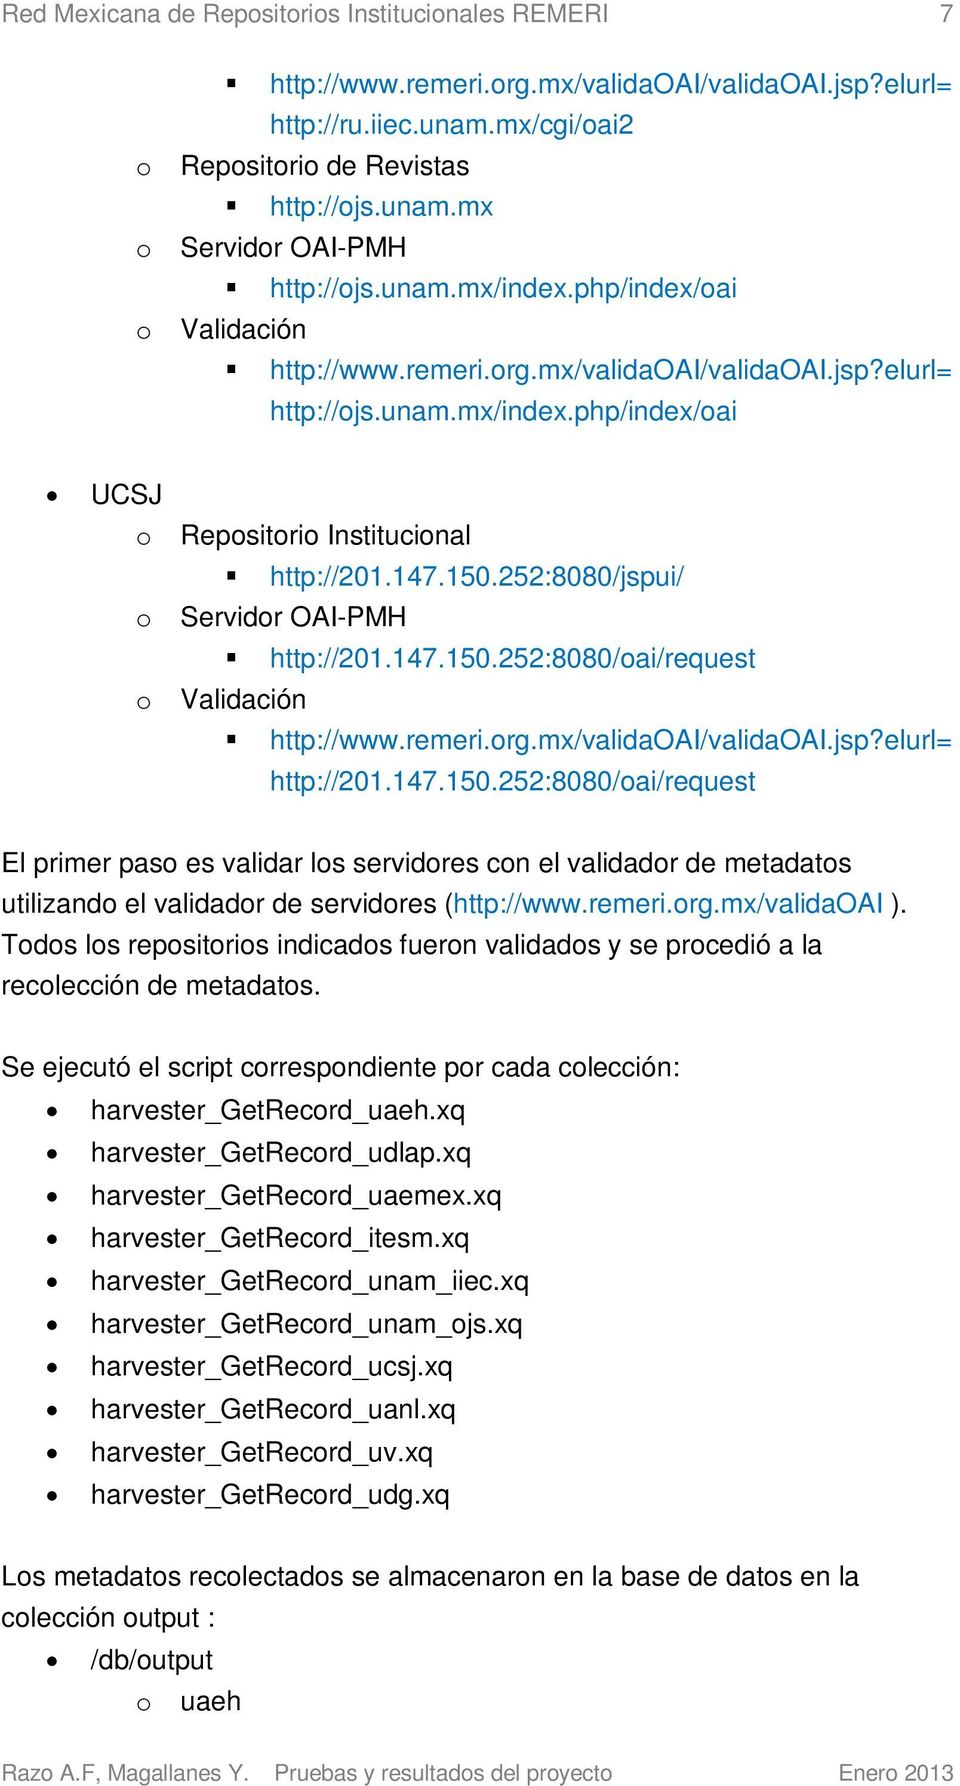 252:8080/jspui/ o Servidor OAI-PMH http://201.147.150.252:8080/oai/request o Validación http://www.remeri.org.mx/validaoai/validaoai.jsp?elurl= http://201.147.150.252:8080/oai/request El primer paso es validar los servidores con el validador de metadatos utilizando el validador de servidores (http://www.